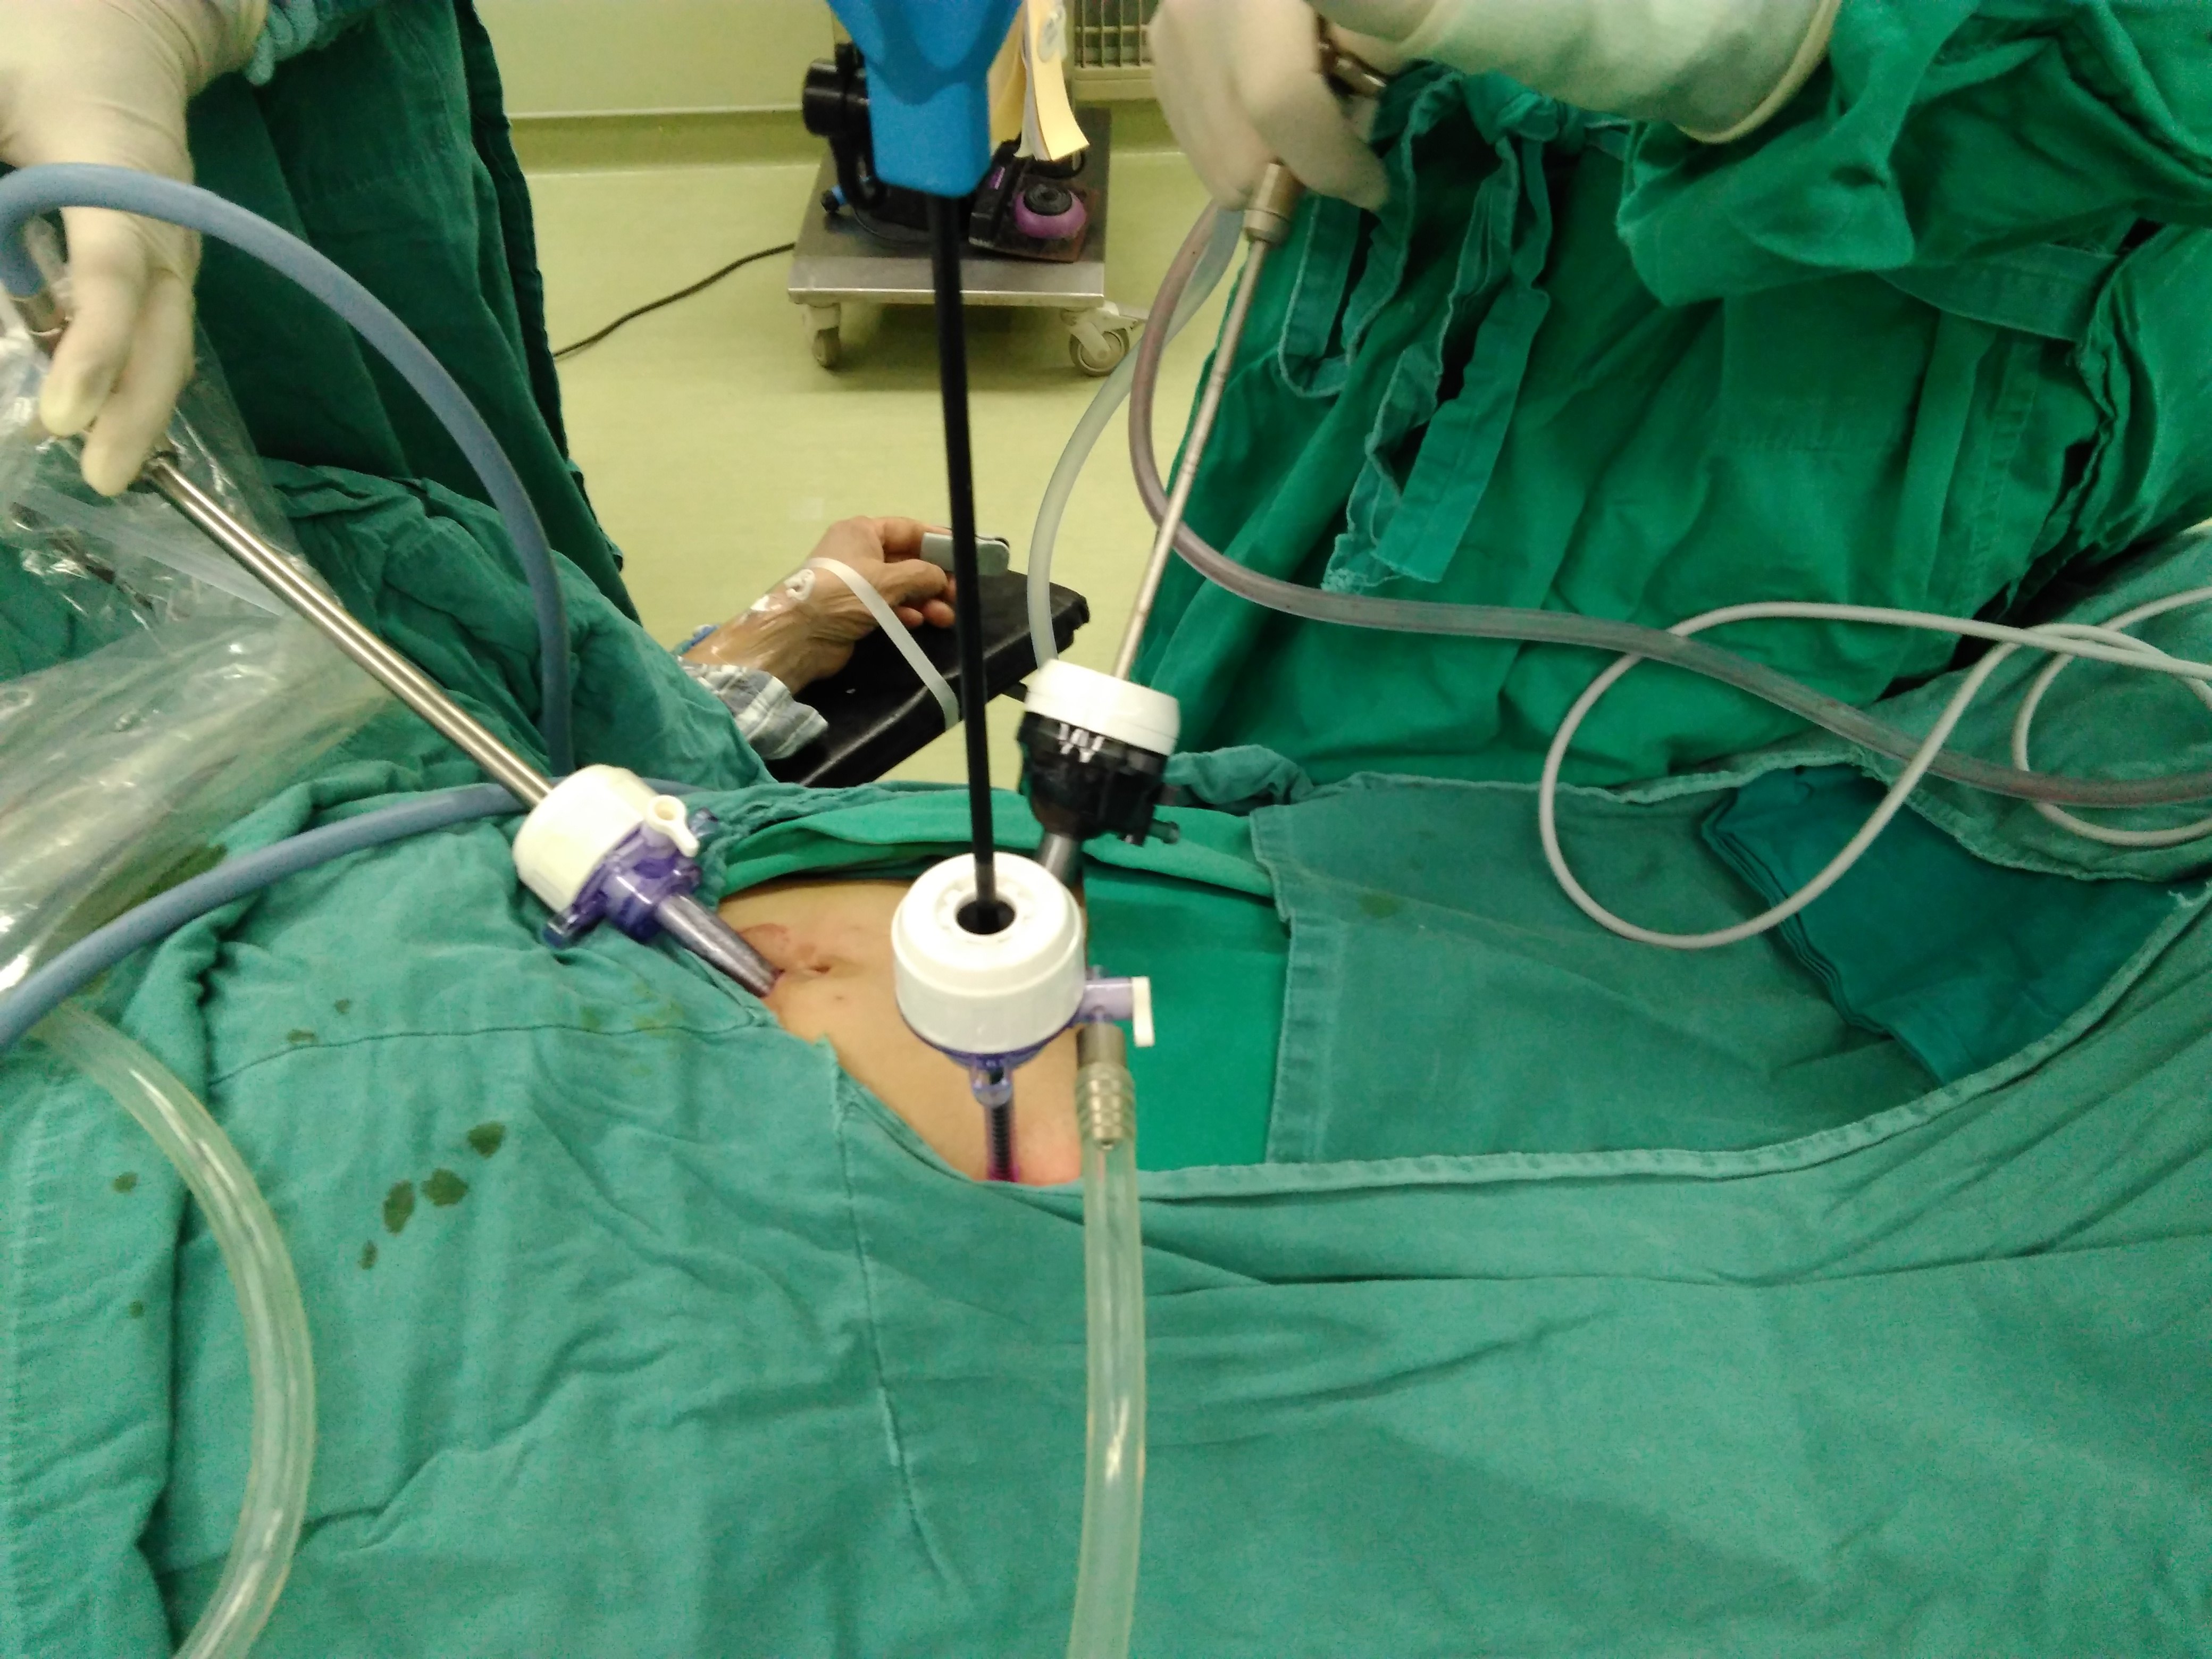 急性阑尾炎穿孔行腹腔镜手术治疗是患者最佳手术方式